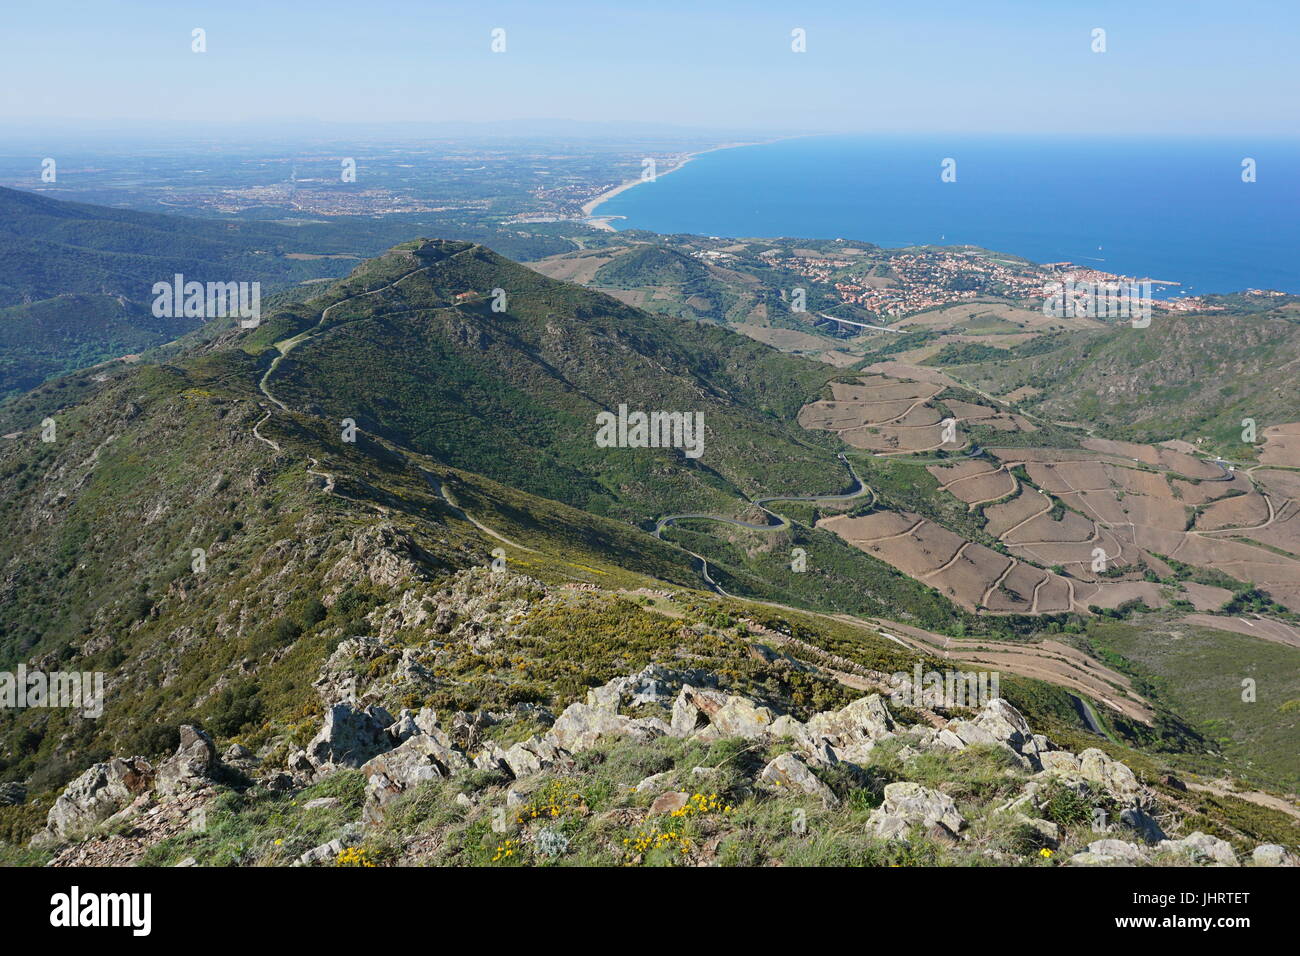 Paysage des montagnes du massif des Albères côte Vermeille, donnant sur la mer méditerranée, Pyrénées Orientales, sud de la France Banque D'Images